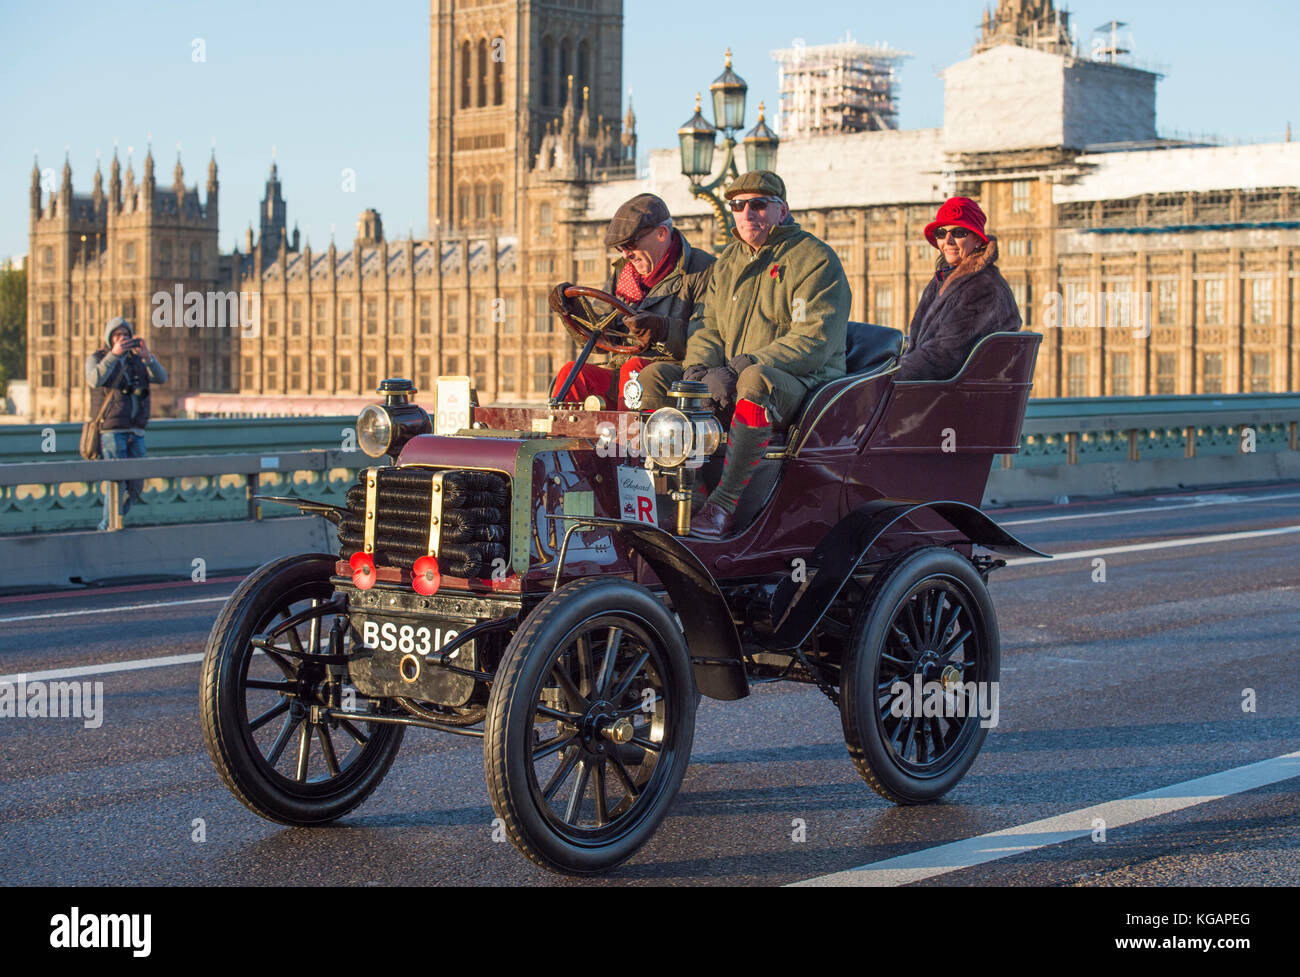 5 novembre 2017. Bonhams de Londres à Brighton, la course automobile de vétéran, la plus longue course automobile au monde, 1900 Daimler sur le pont de Westminster. Banque D'Images